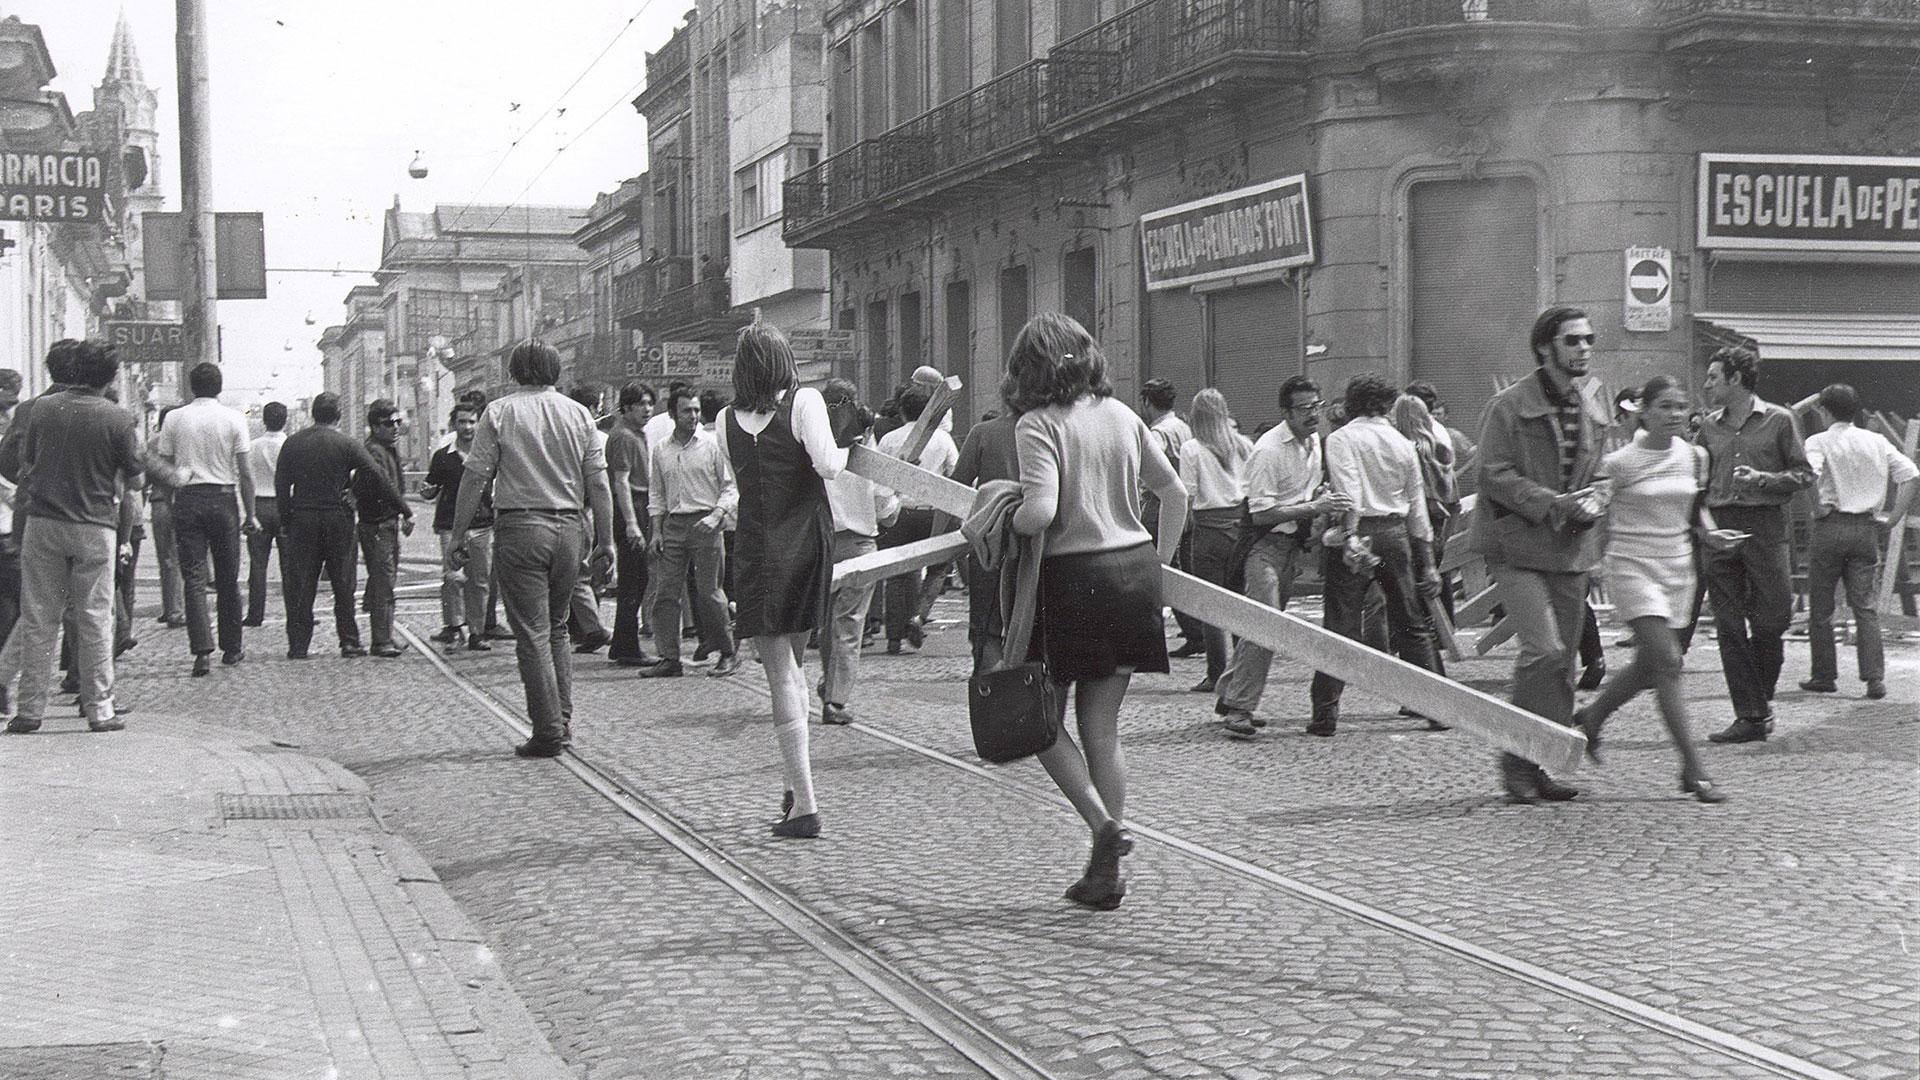 El Rosariazo fue una serie de protestas que tuvieron lugar en mayo de 1969 contra la dictadura de Juan Carlos Onganía